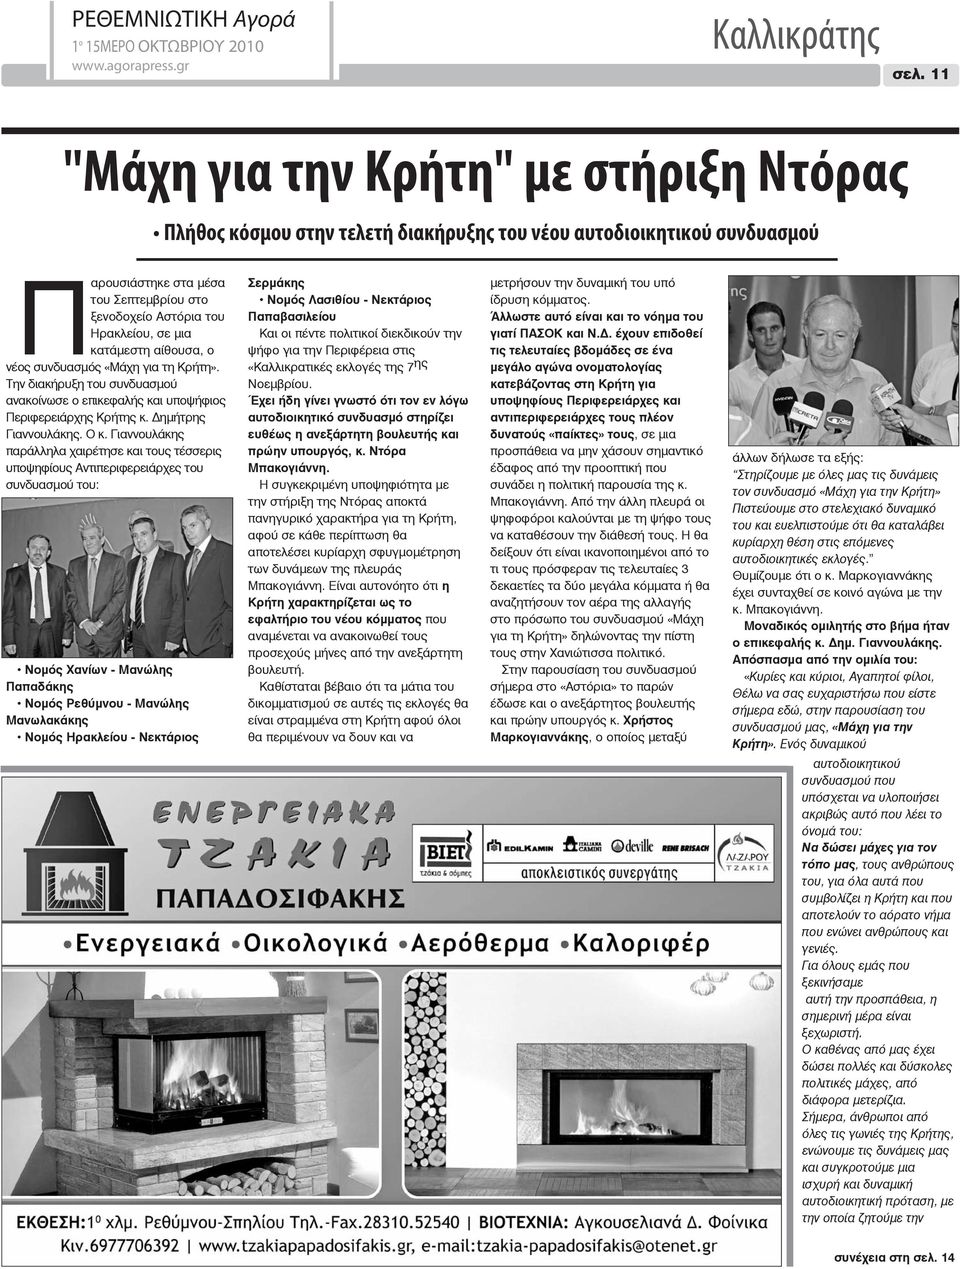 κατάμεστη αίθουσα, ο νέος συνδυασμός «Μάχη για τη Κρήτη». Την διακήρυξη του συνδυασμού ανακοίνωσε ο επικεφαλής και υποψήφιος Περιφερειάρχης Κρήτης κ. Δημήτρης Γιαννουλάκης. Ο κ.